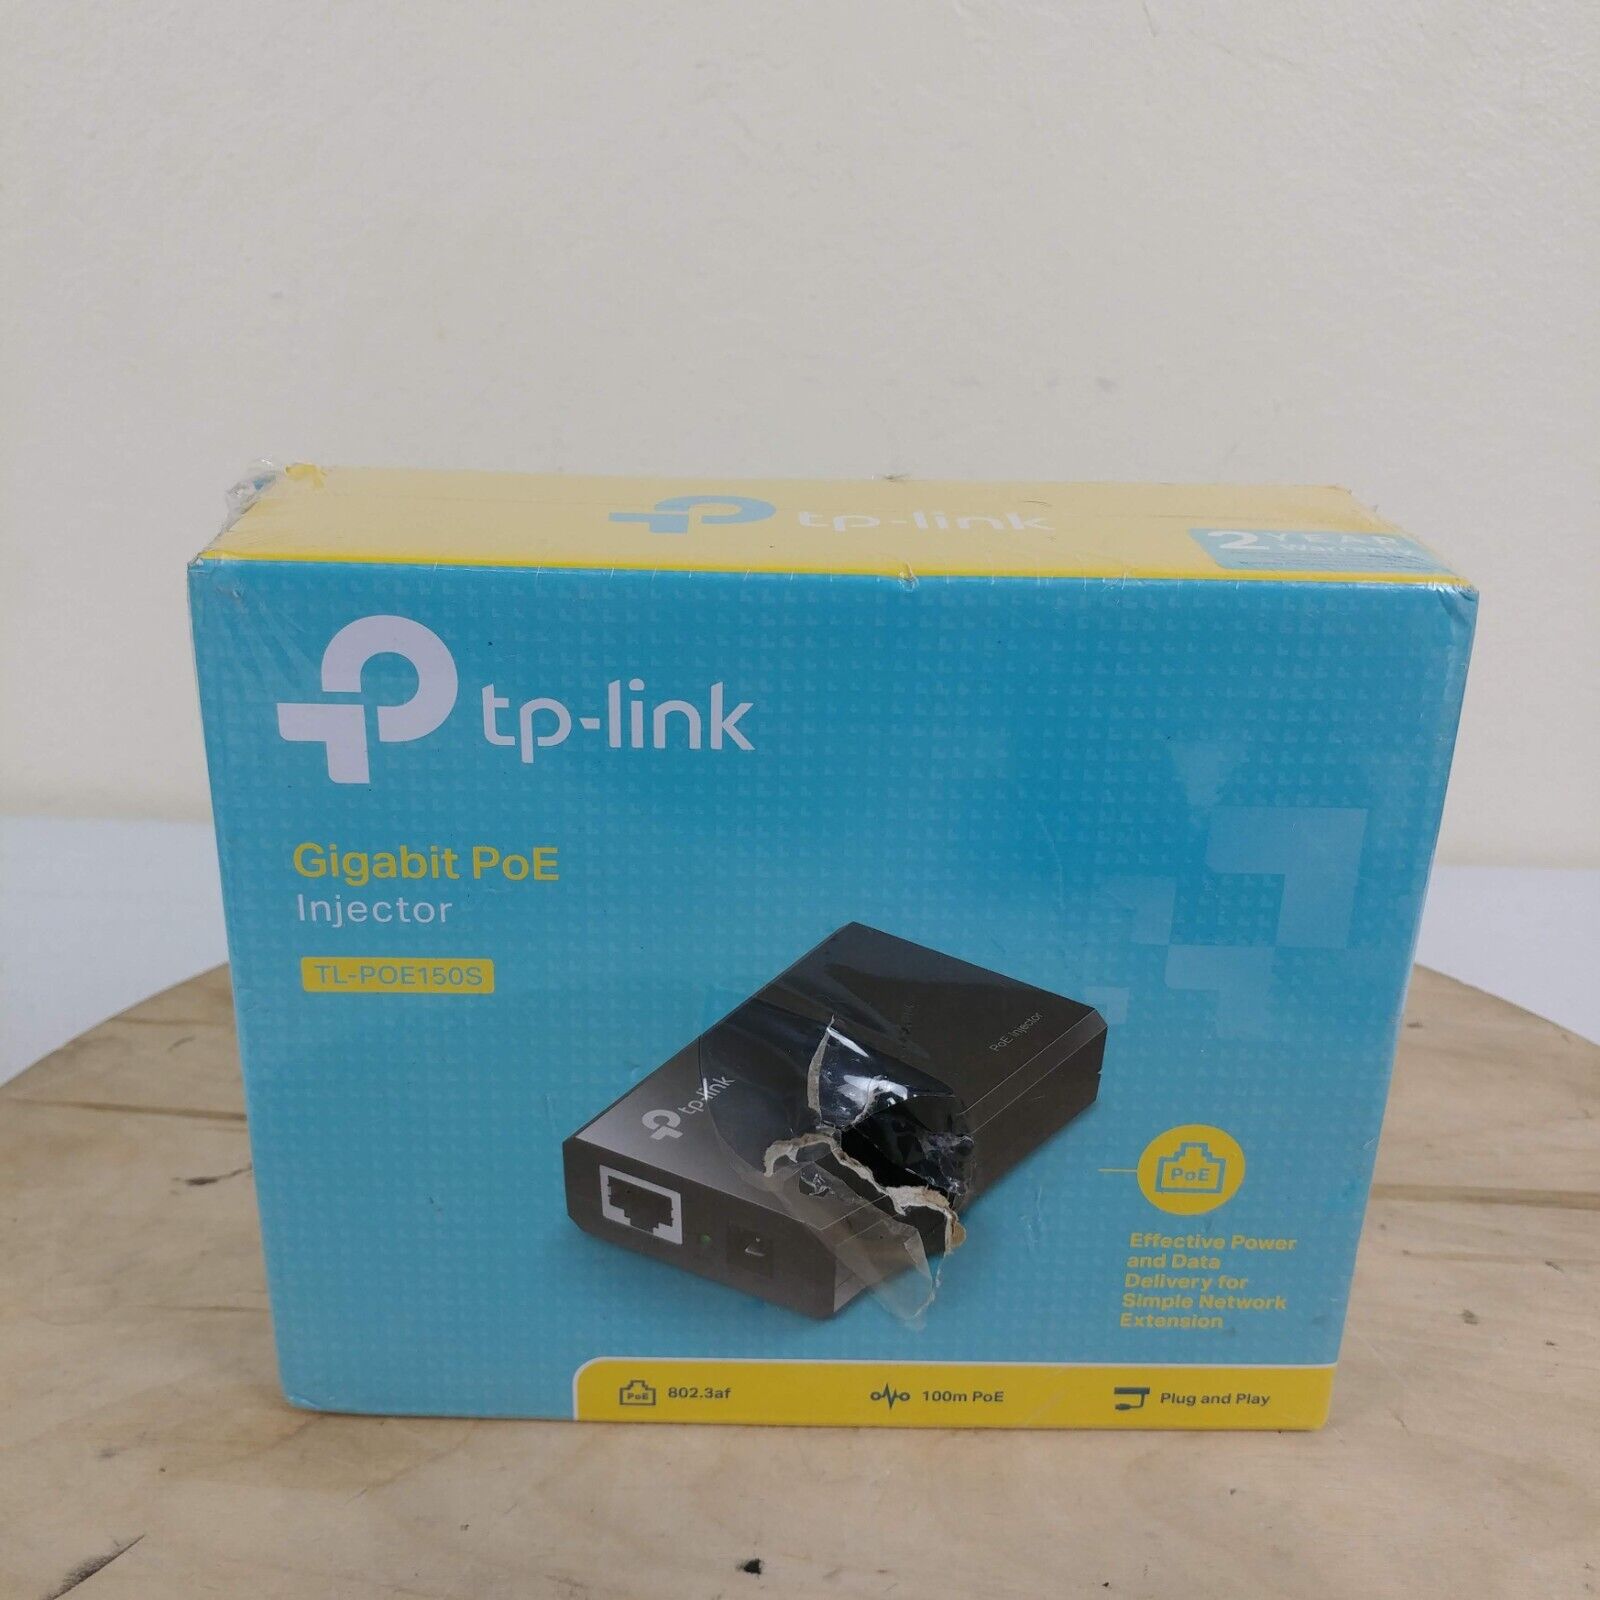 TP-LINK 802.3af Gigabit Power Over Ethernet PoE Injector Model TL-POE150S READ